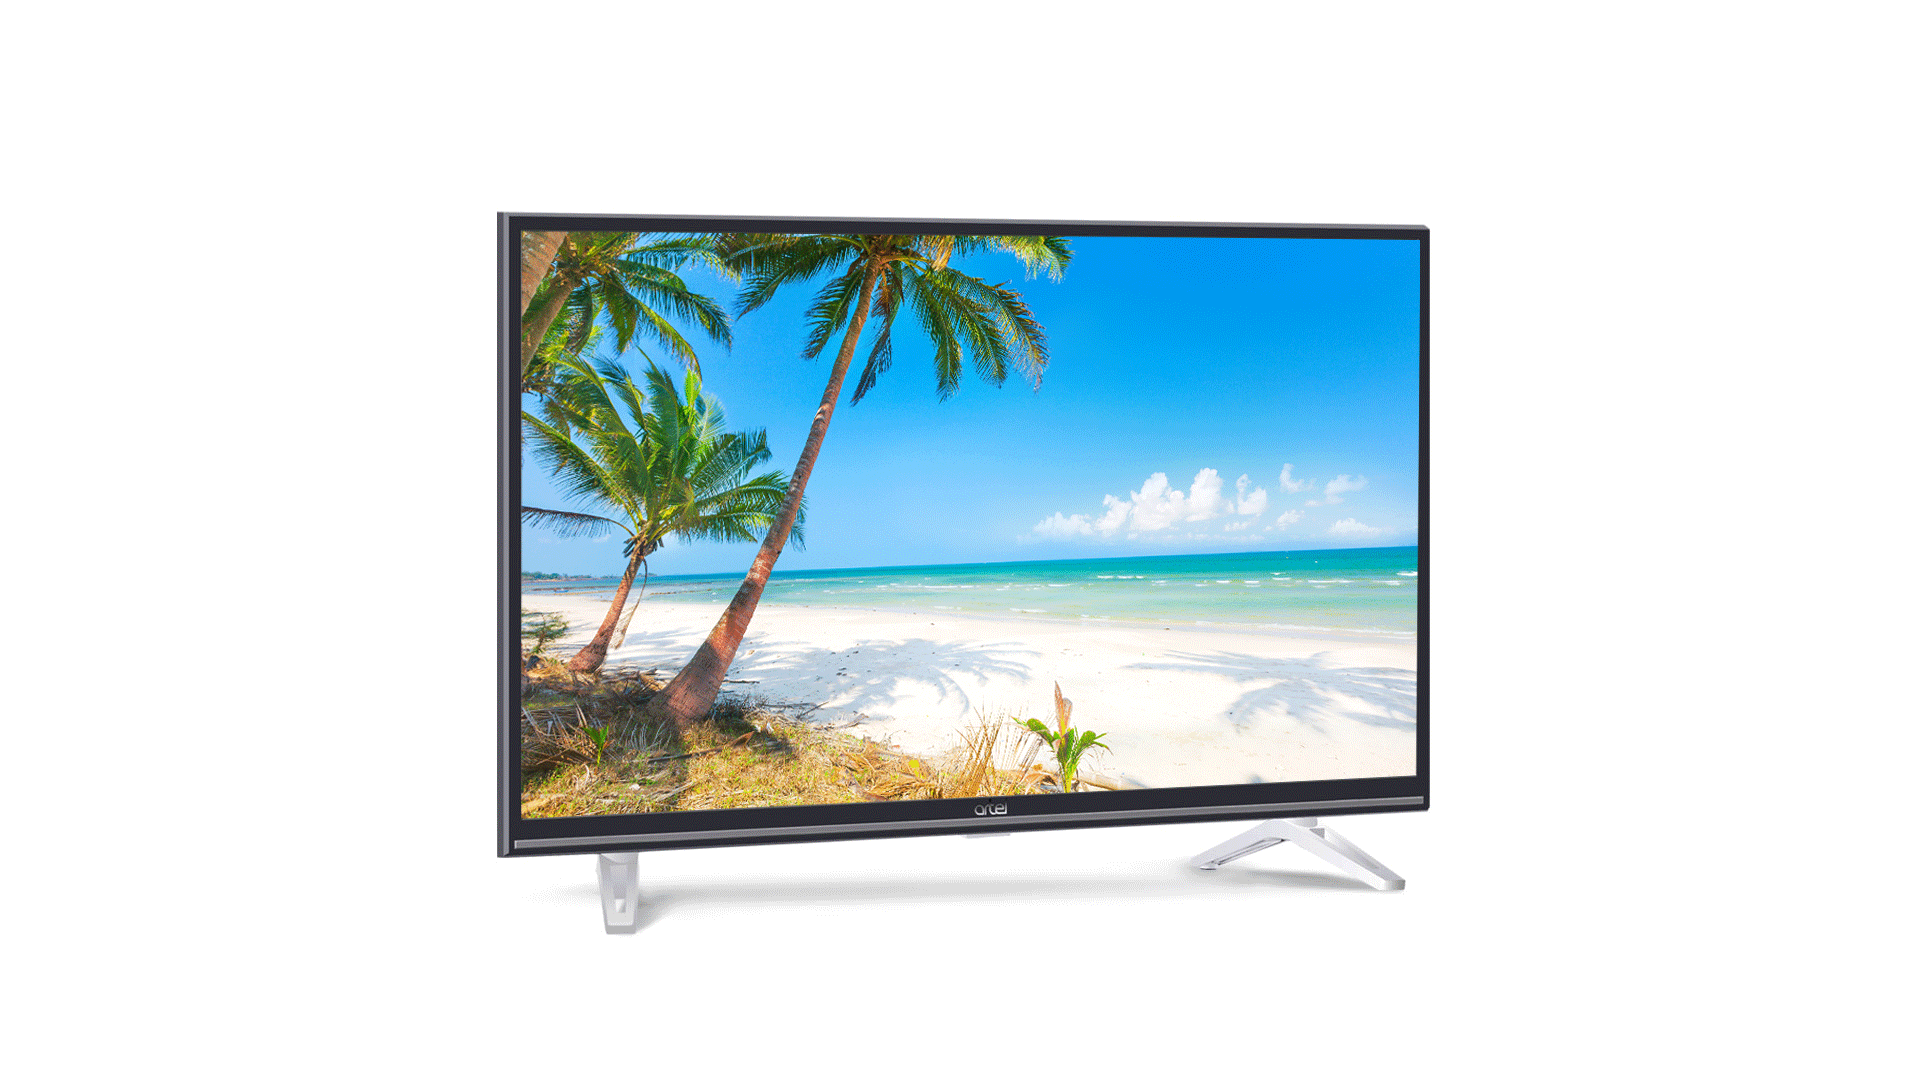 Телевизор Artel UA32H1200 Smart TV недорого